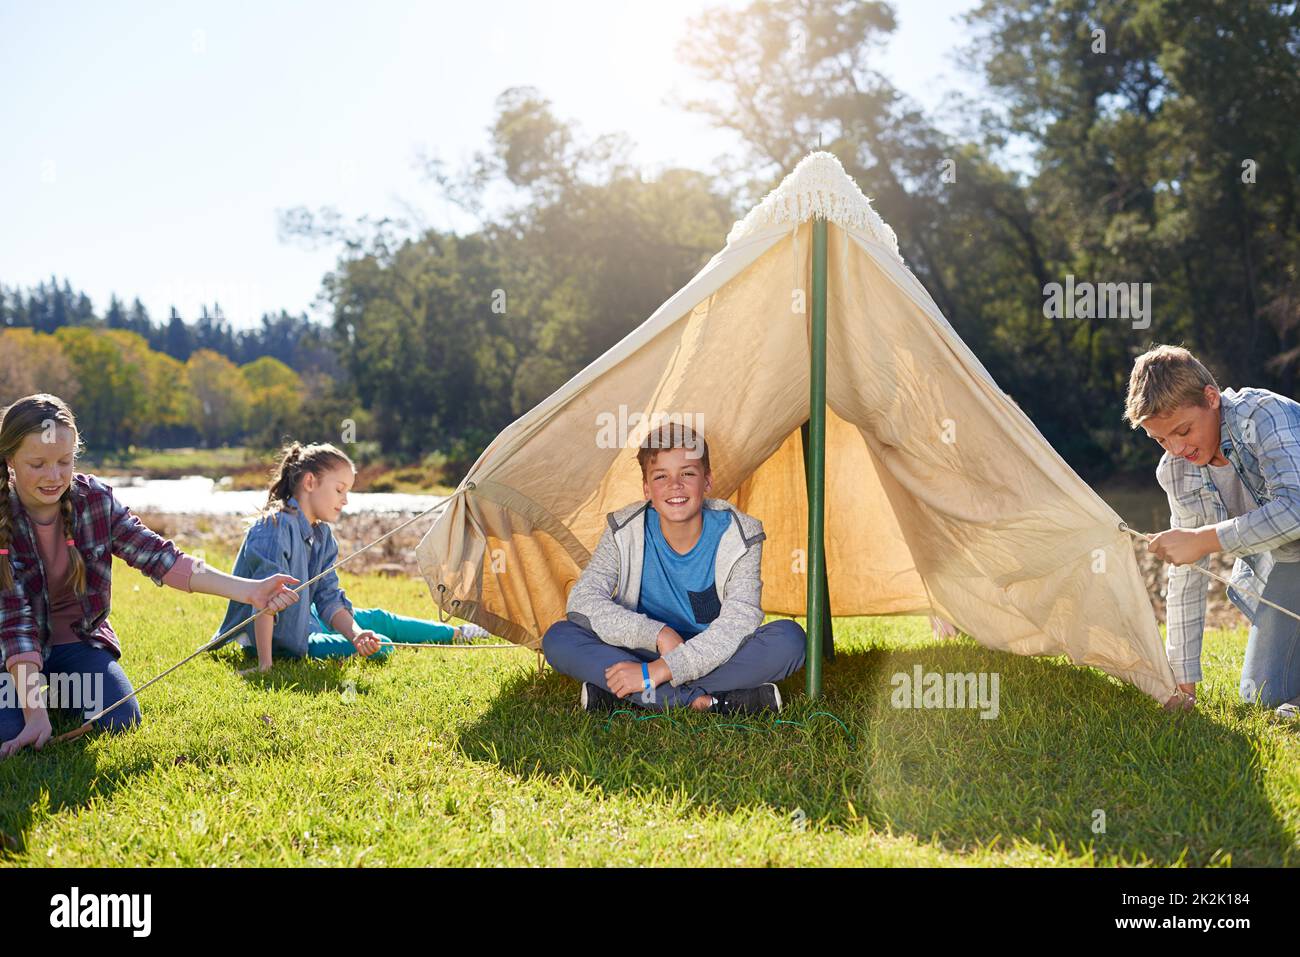 Le bonheur est en voyage de camping. Photo d'un groupe d'enfants lors d'un voyage en camping. Banque D'Images